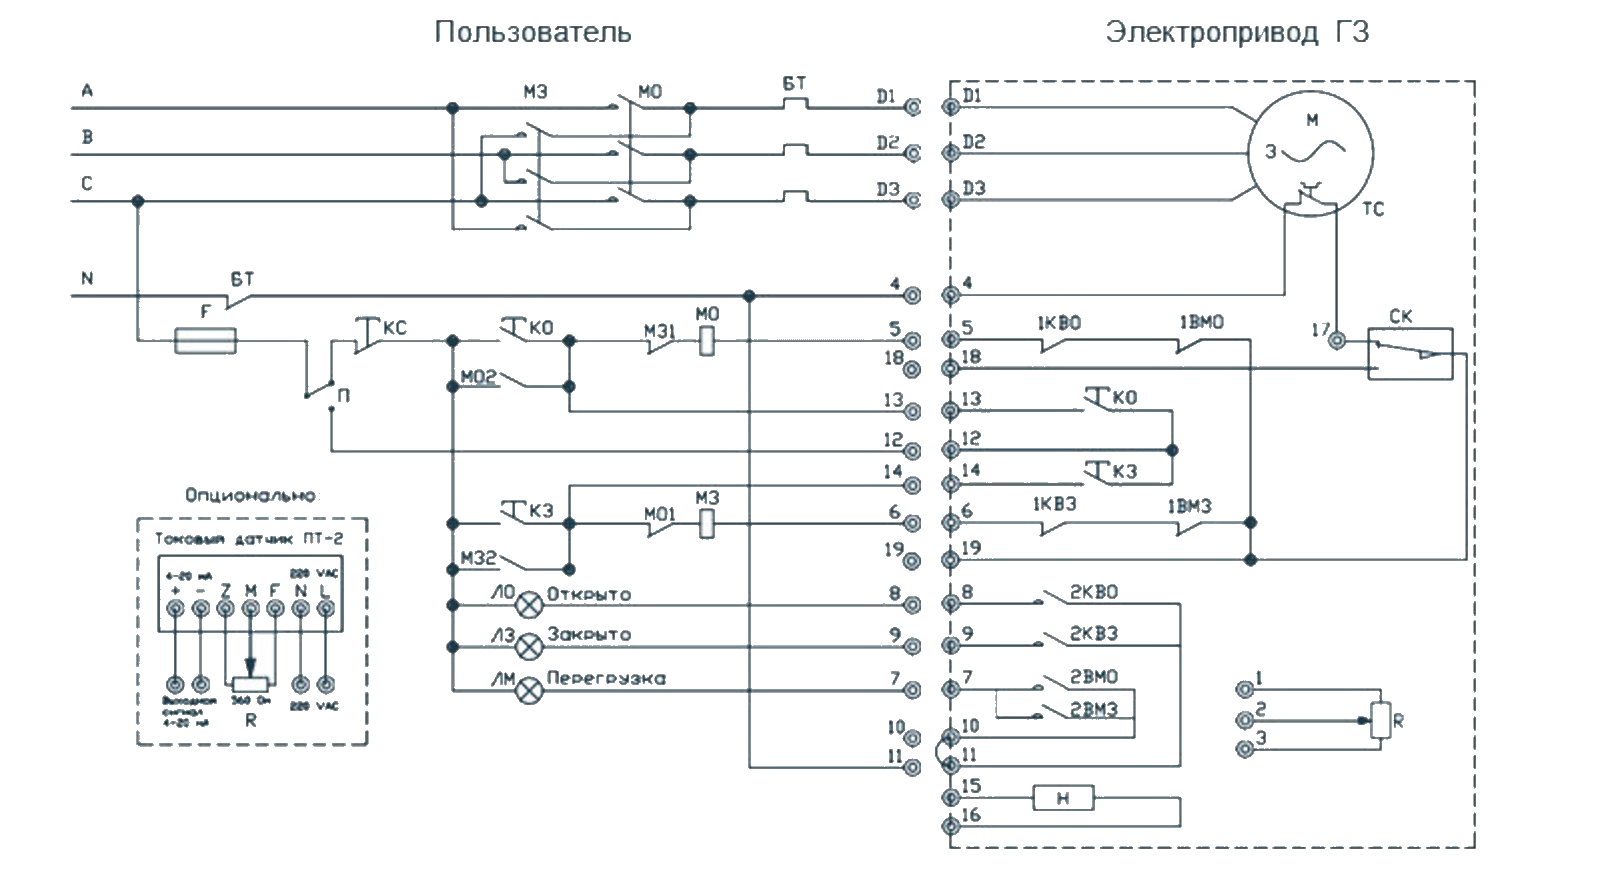 Схема подключения электропривода